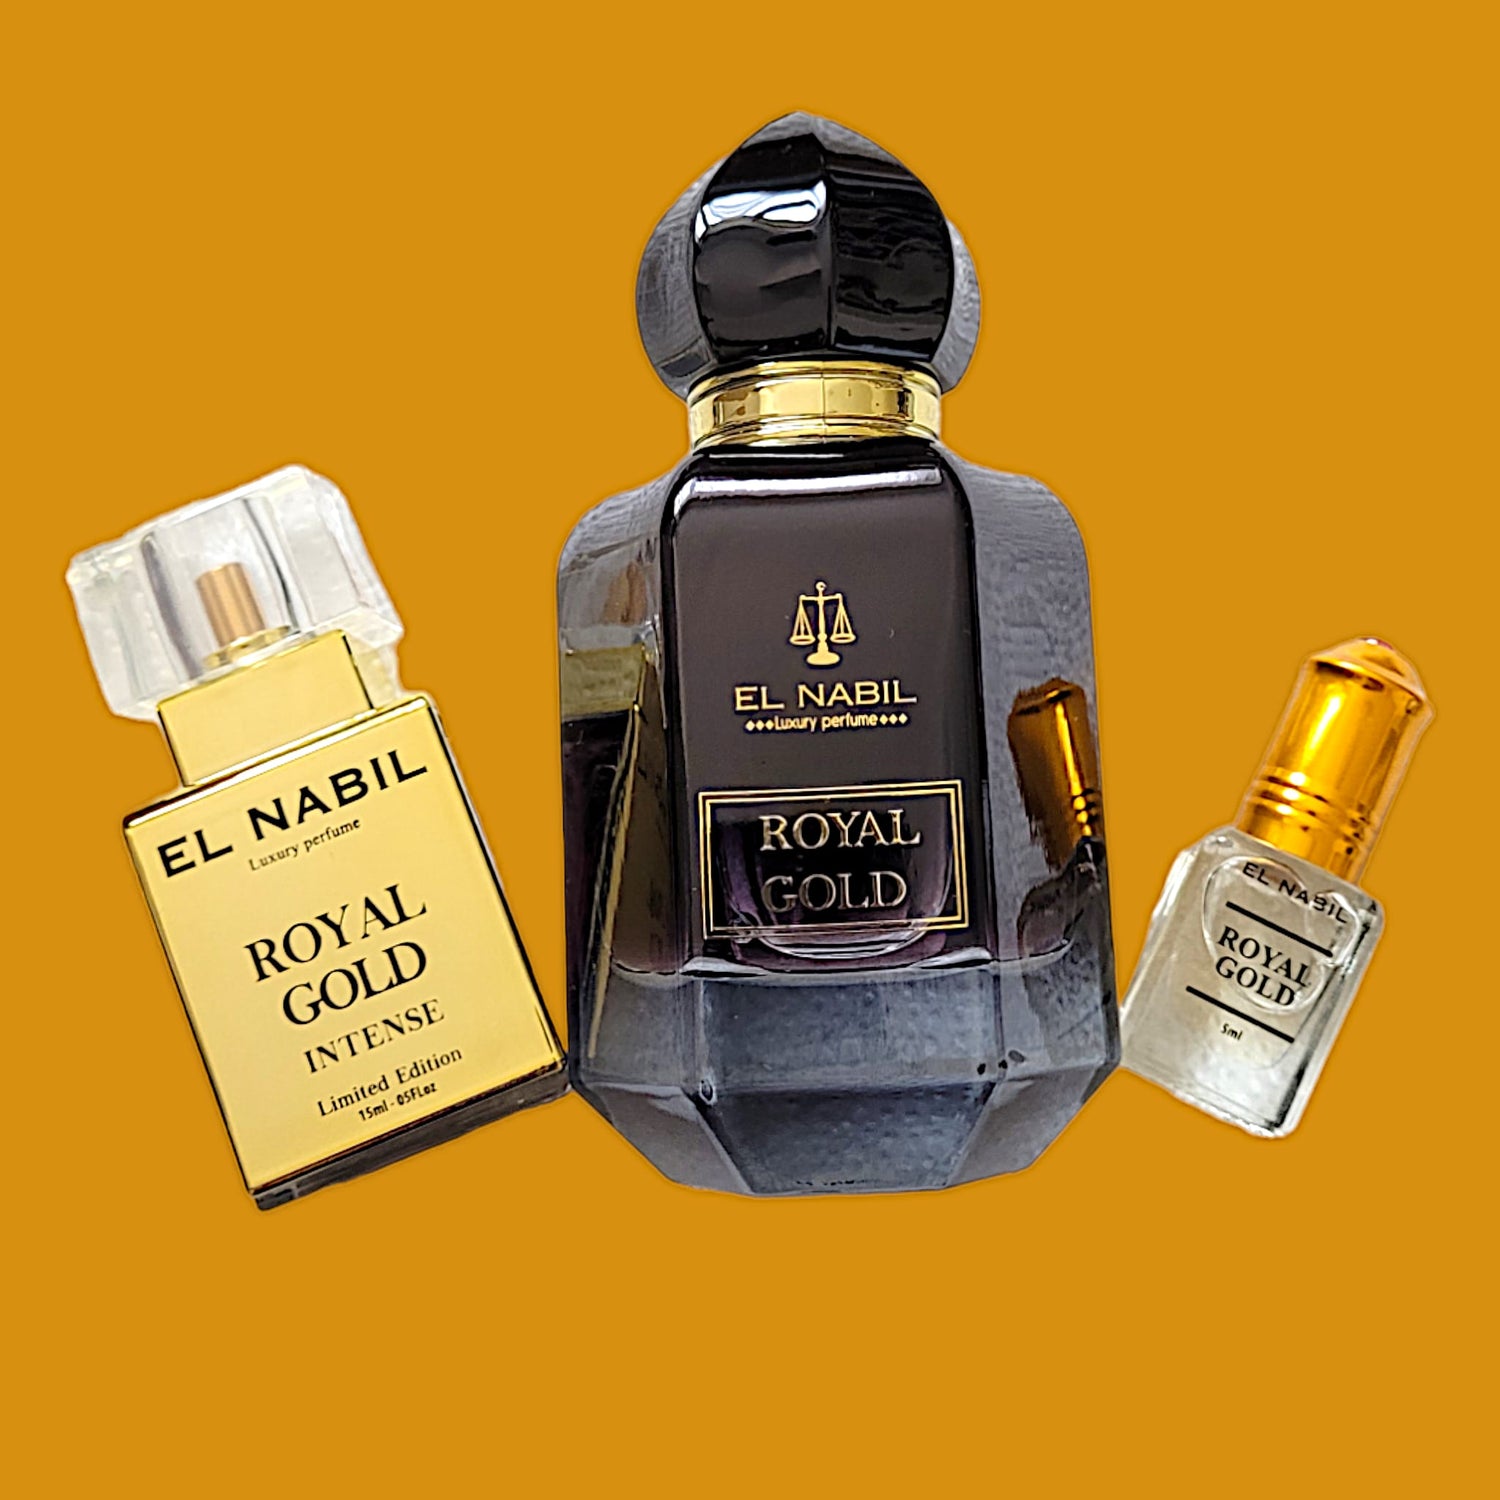 El Nabil Royal Gold Set 50ml EDP 15 ml Intense 5 ml Parfüm Öl Gratis